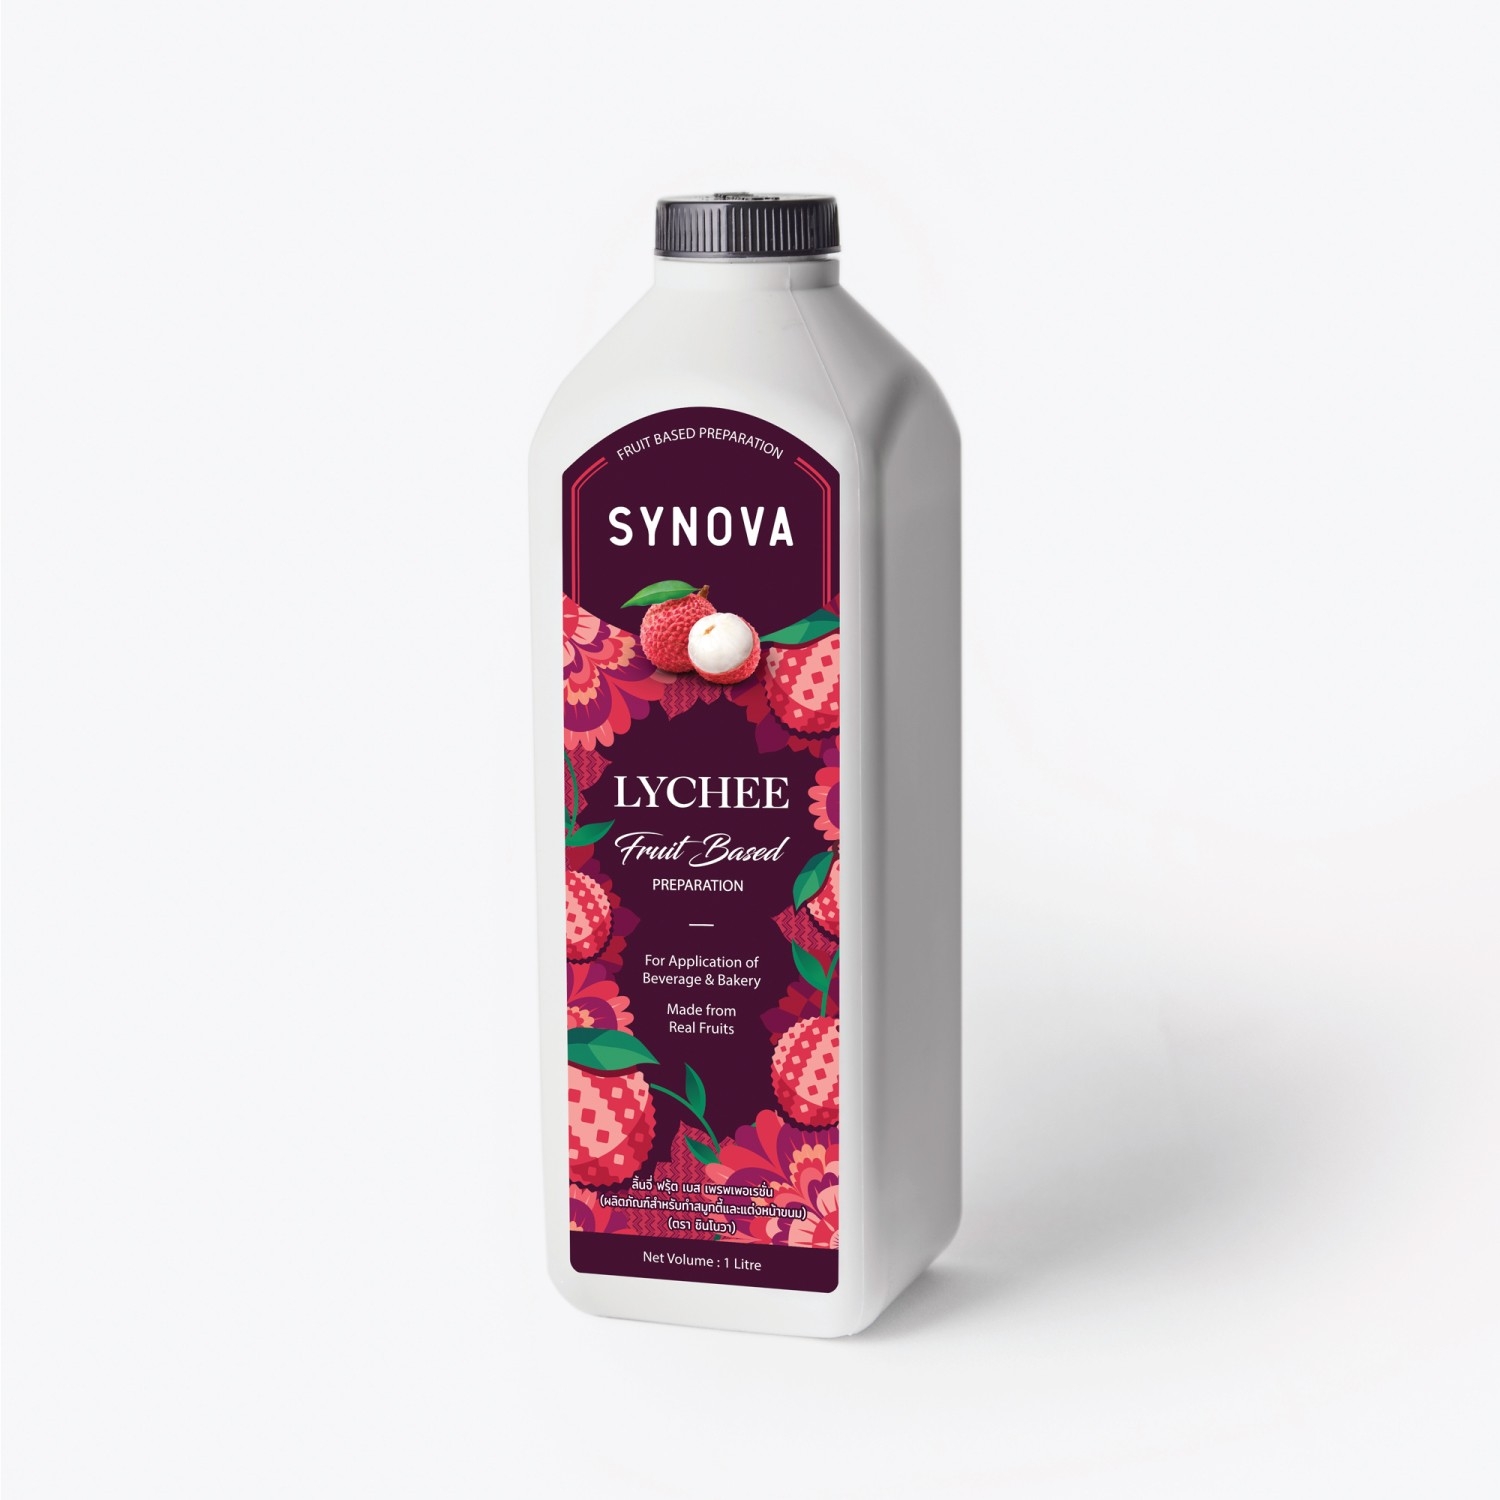 น้ำผลไม้เข้มข้น : SYNOVA ซอสลิ้นจี่เข้มข้น (ยกกล่อง)